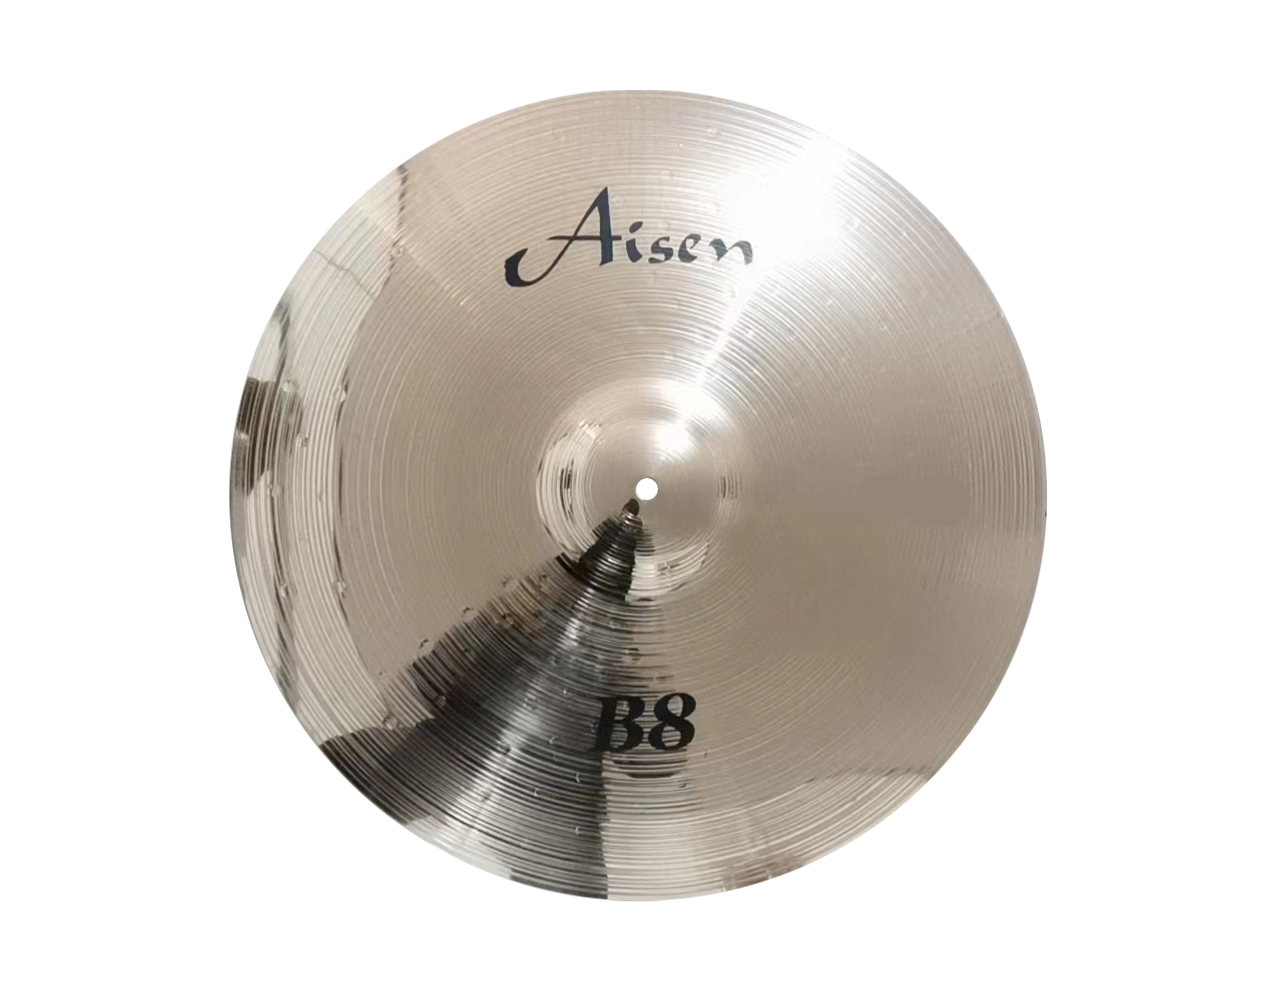 Тарелки, барабаны для ударных установок AISEN B8 CRASH 16' тарелки барабаны для ударных установок istanbul agop 14 ms x hi hats